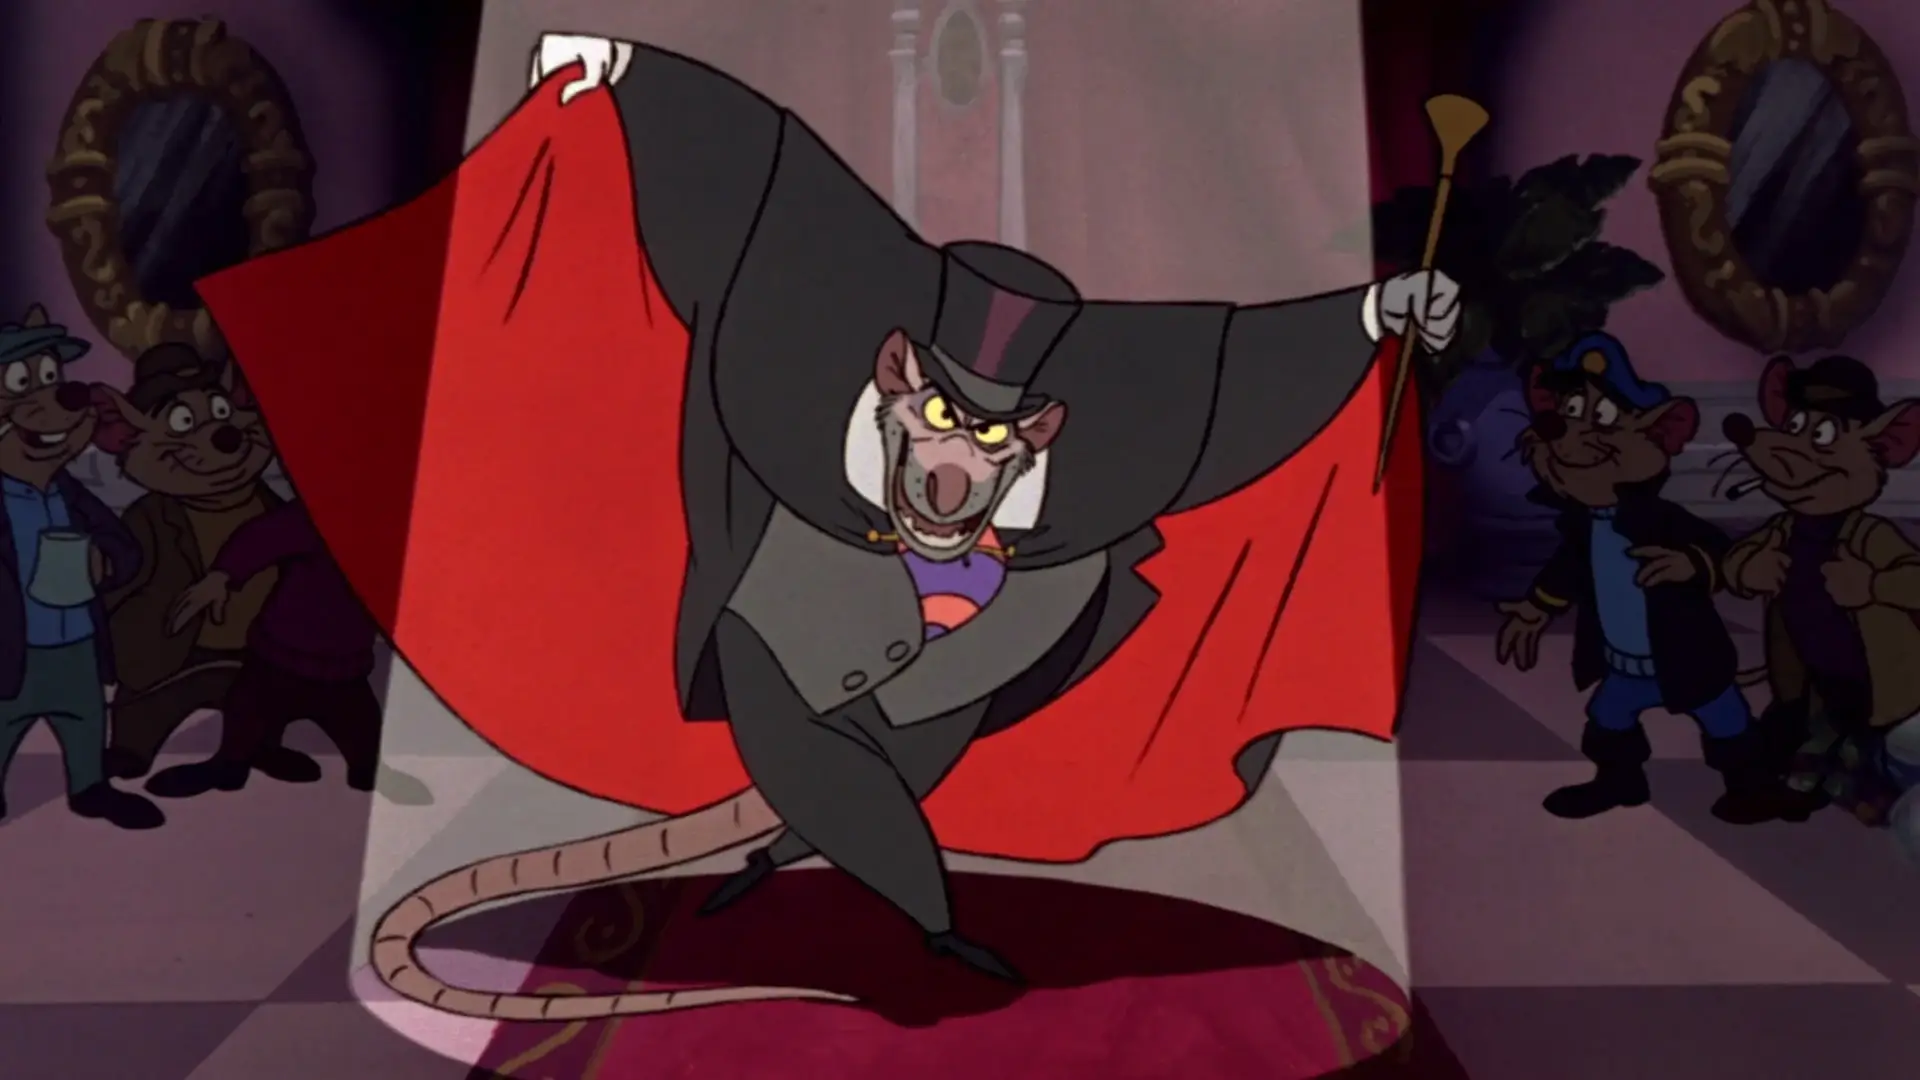 Professor Ratigan - The Mouse Cartoon